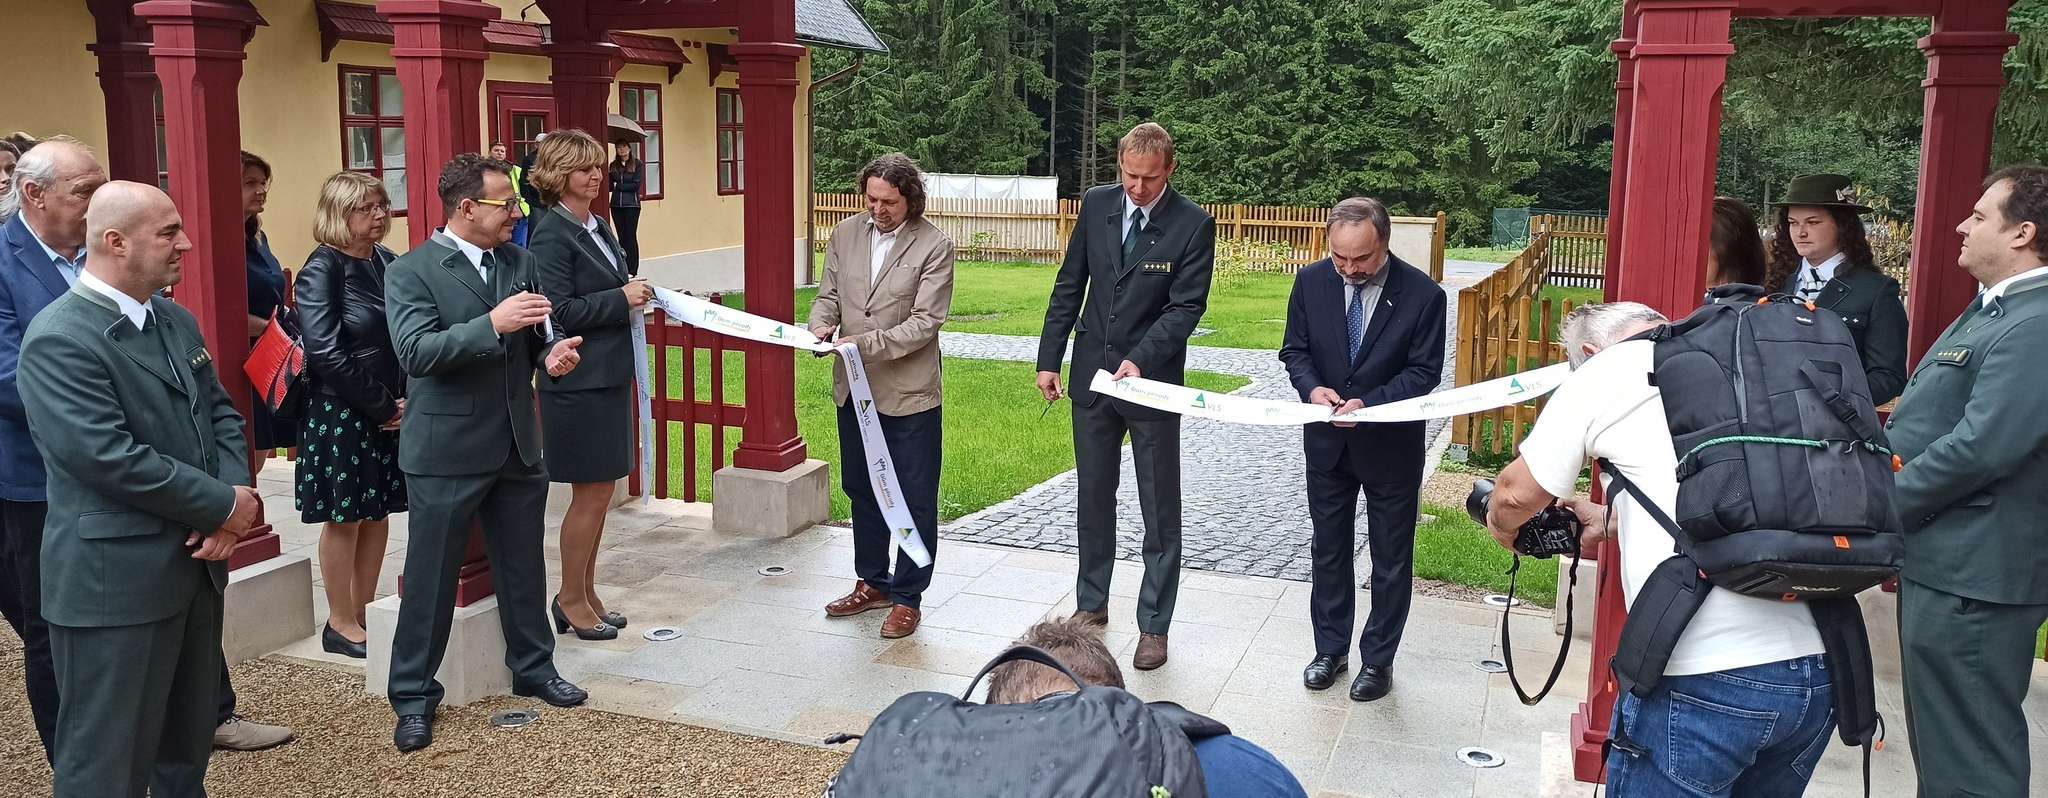 Dům přírody Brd se otevřel veřejnosti